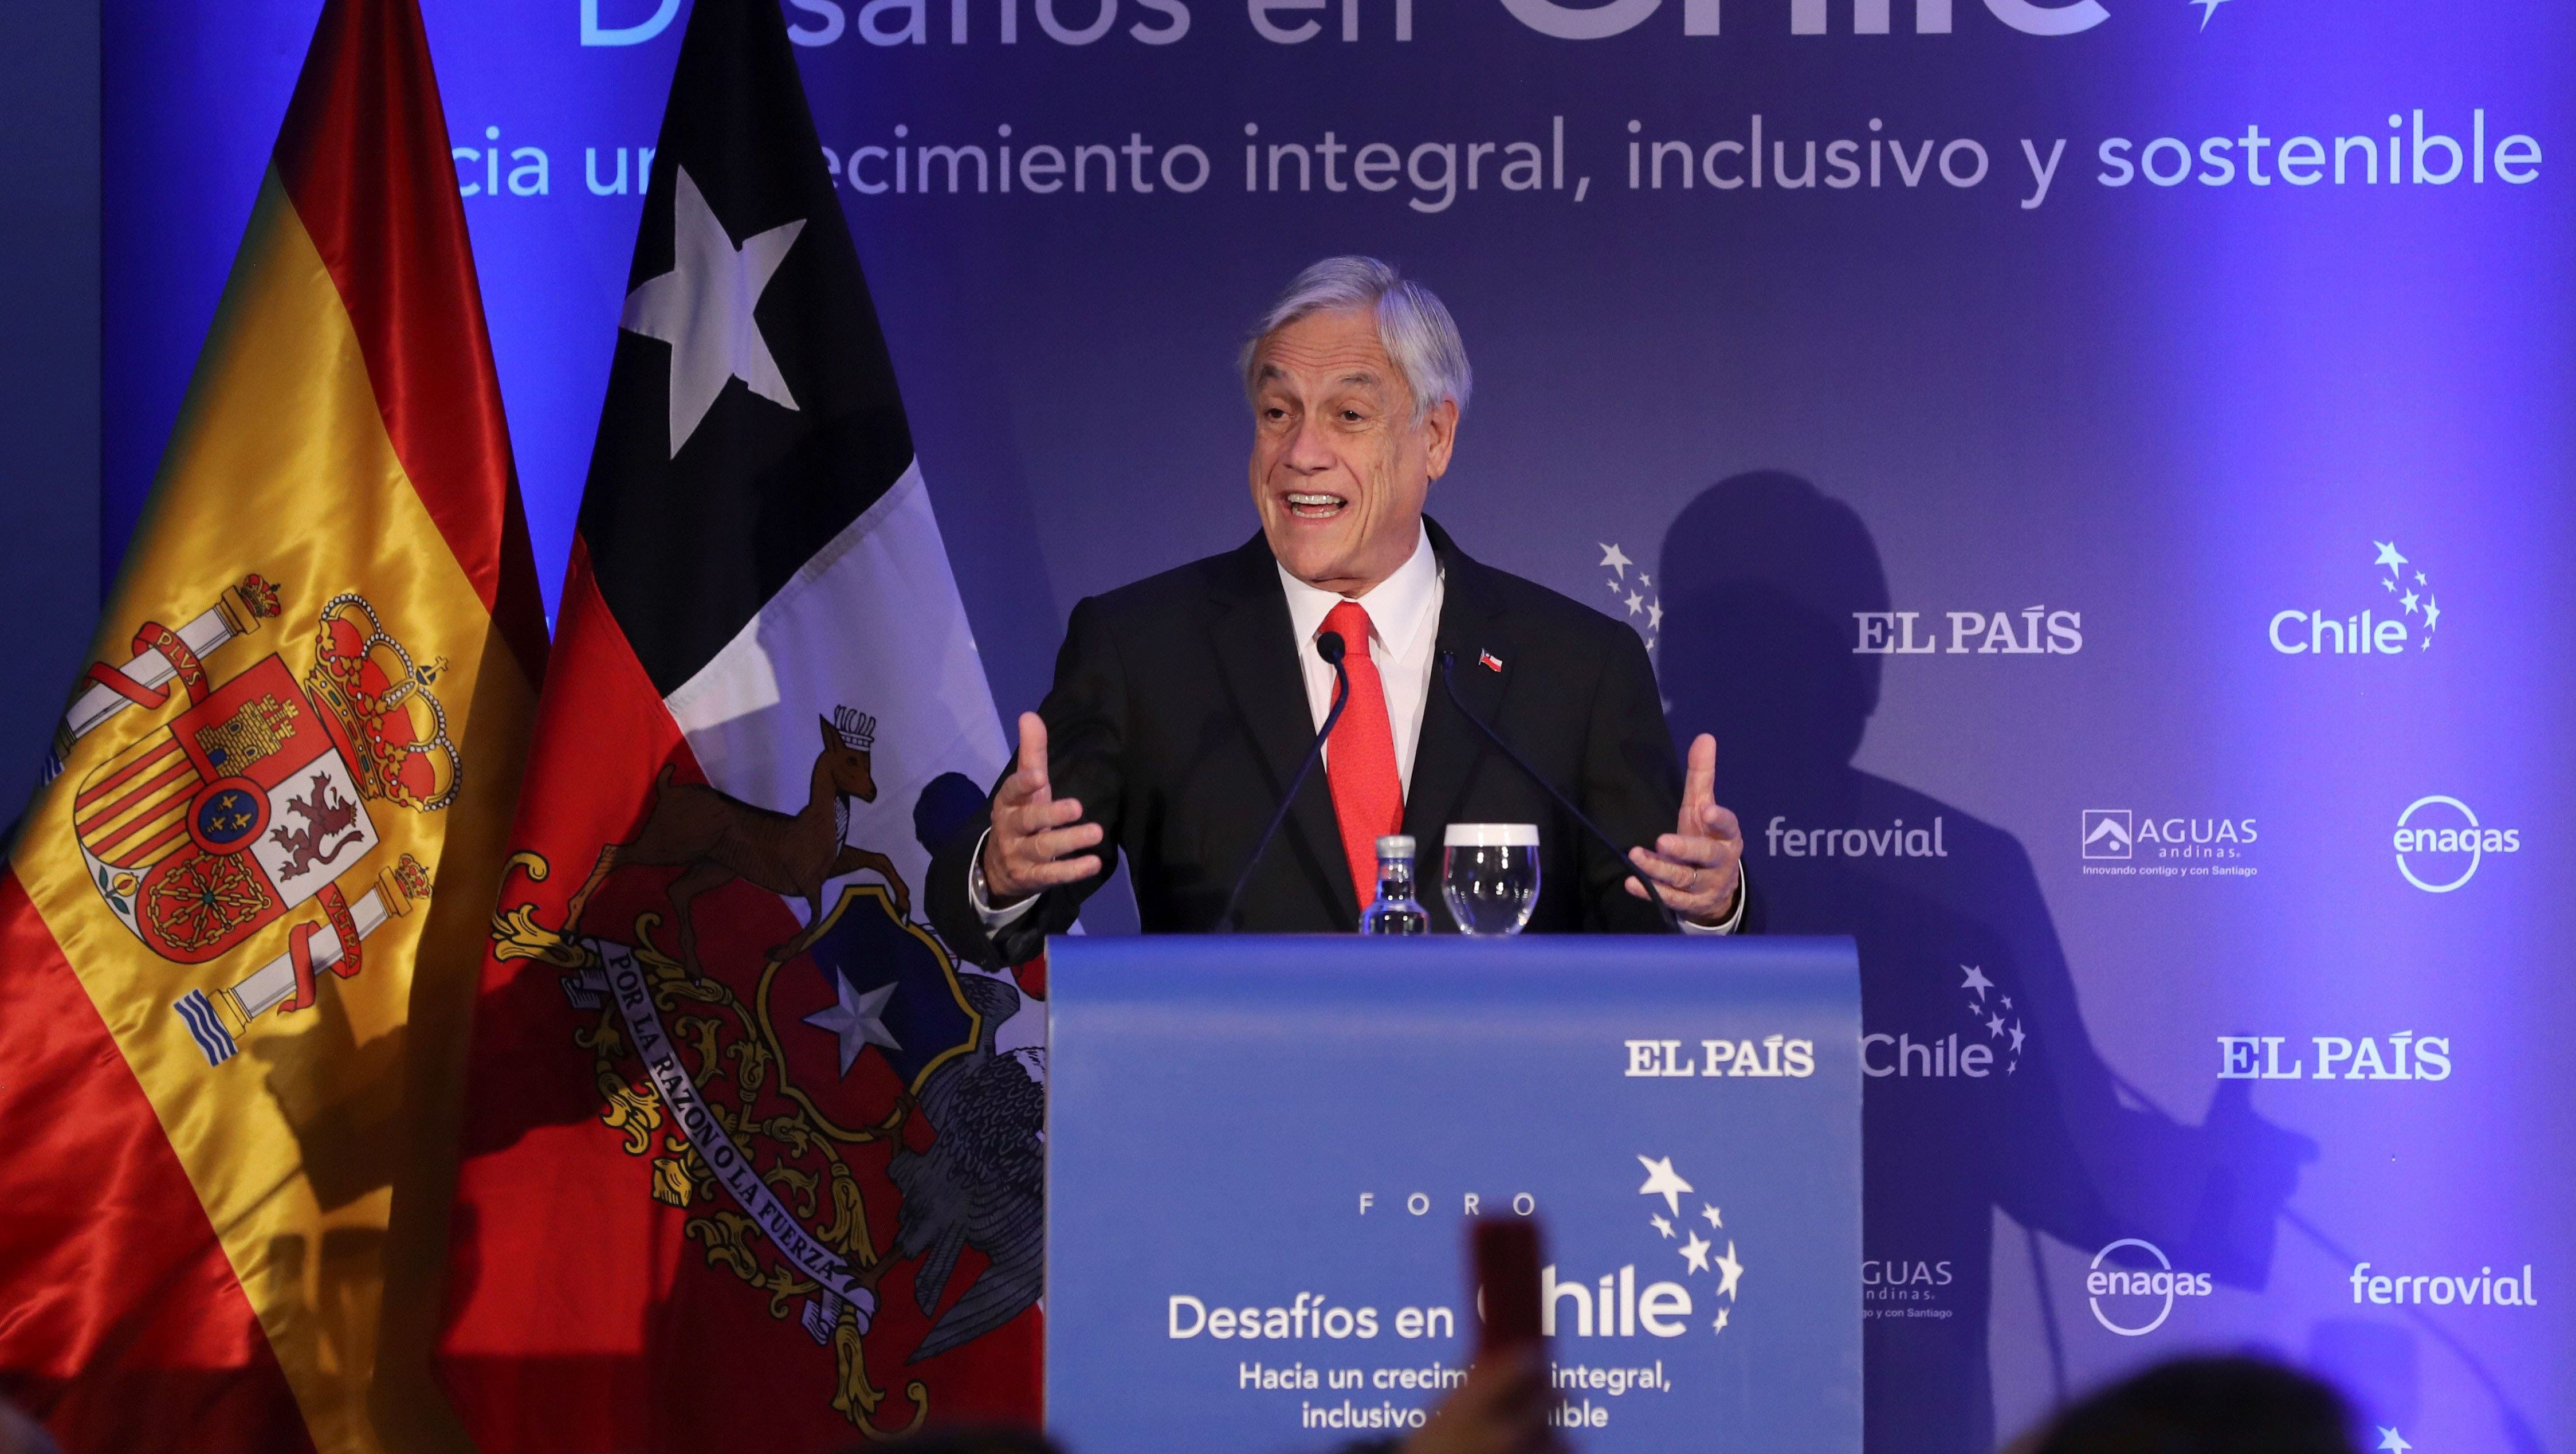 Piñera reconoció que Bolsonaro es una persona que genera incertidumbre, a parte de tener un lenguaje homofóbico y agresivo contra las mujeres.